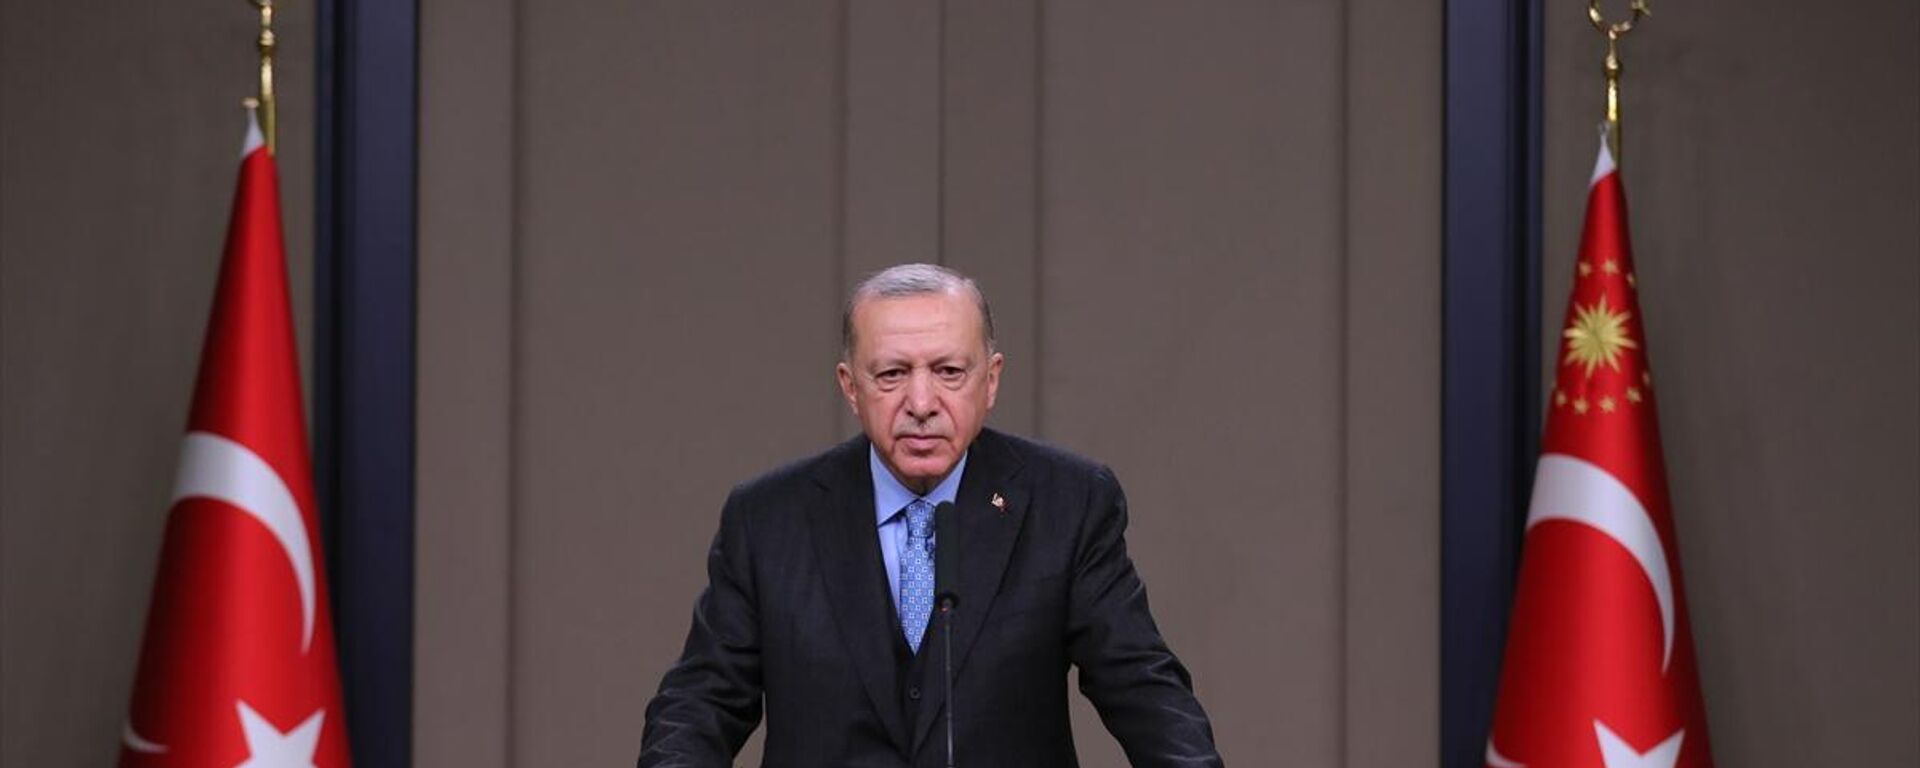 Cumhurbaşkanı Recep Tayyip Erdoğan, Ukrayna ziyareti öncesinde basın toplantısı düzenledi. - Sputnik Türkiye, 1920, 08.02.2022